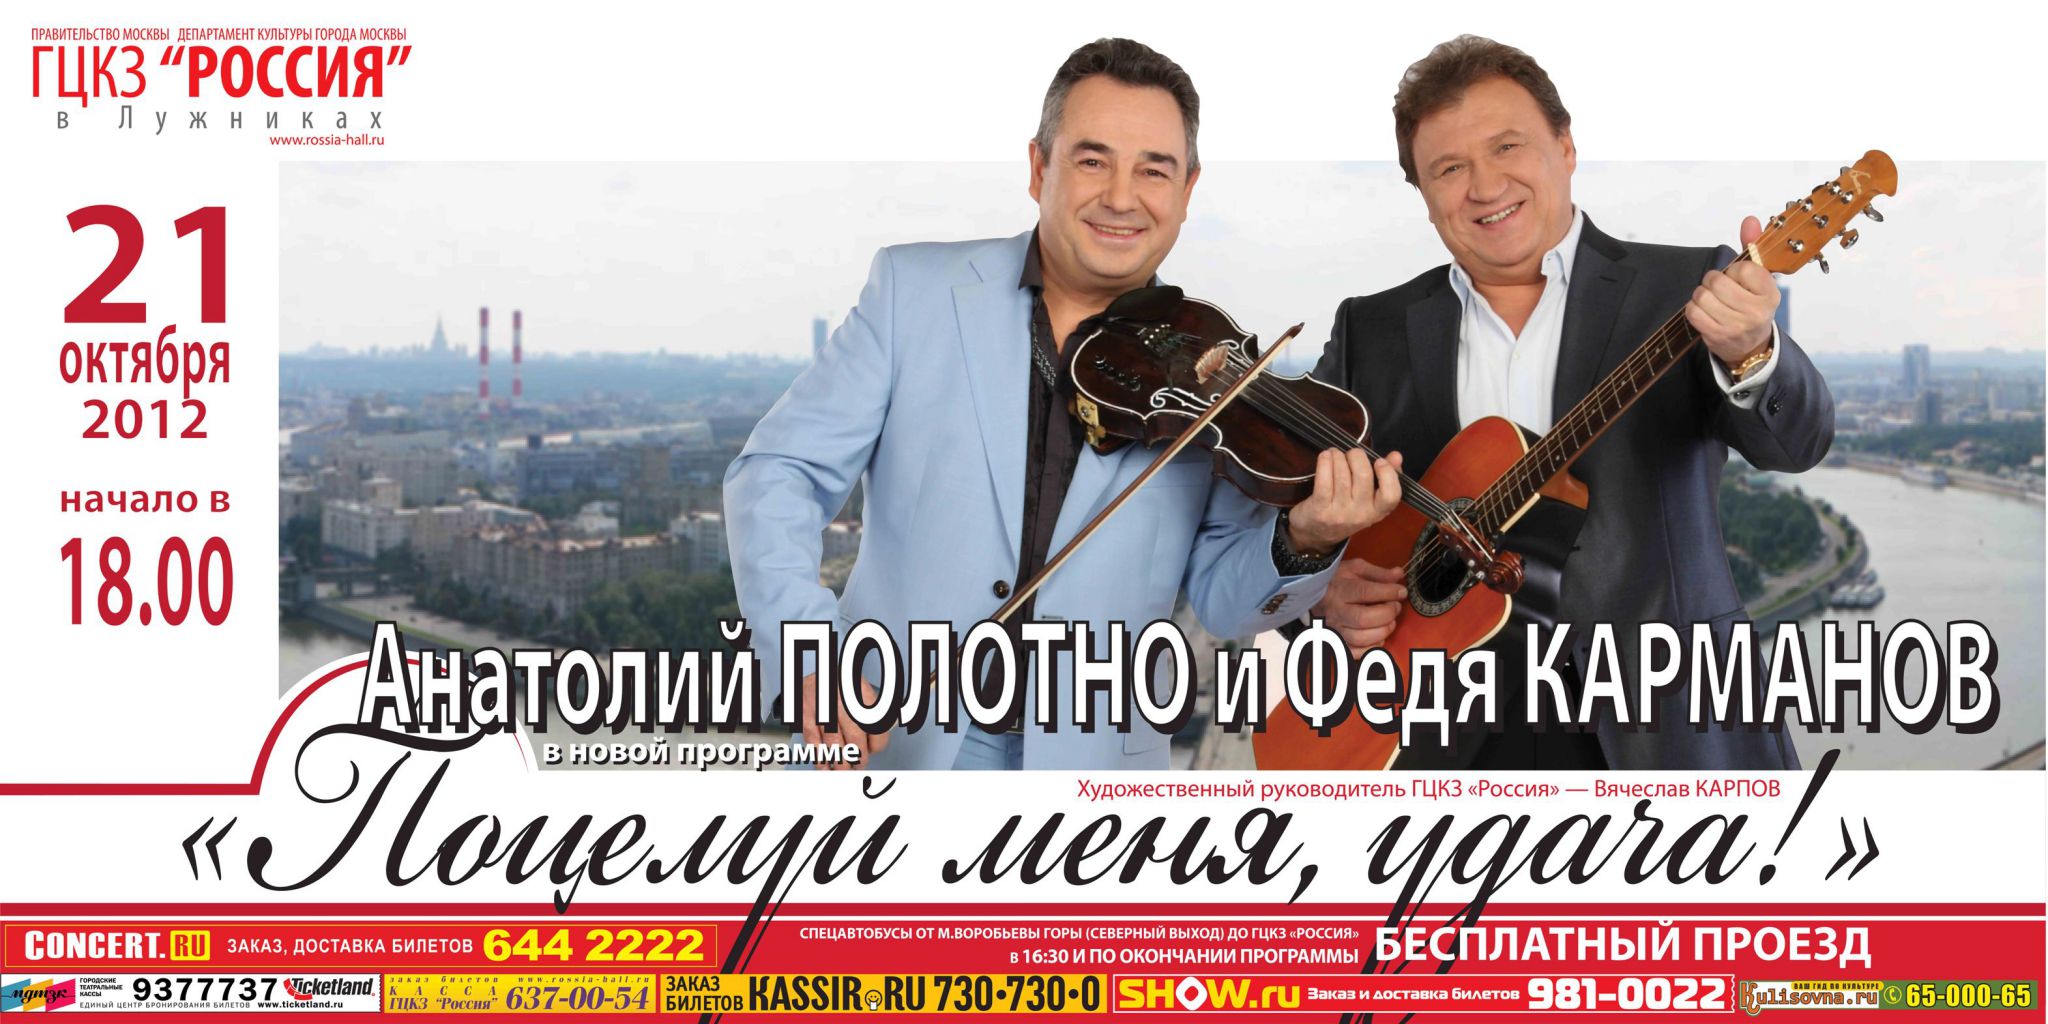 Сольный концерт Анатолия Полотно и Феди Карманова 21 октября 2012 года